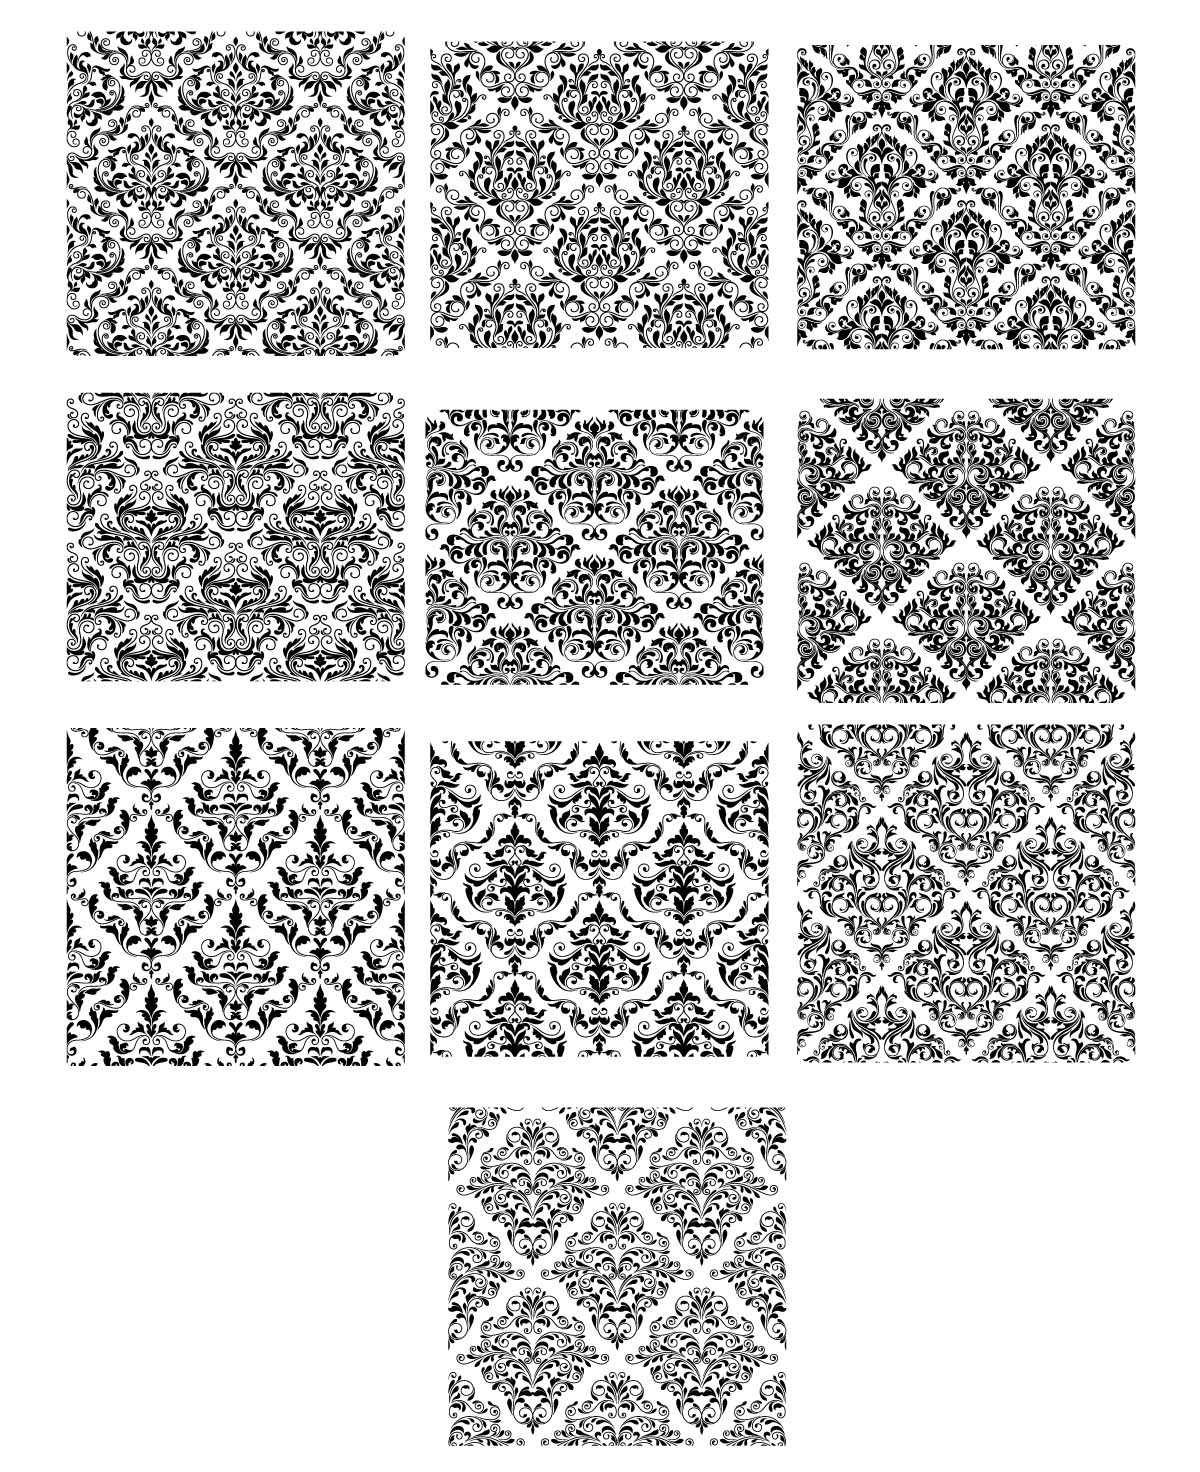 Ornate black patterns set vector